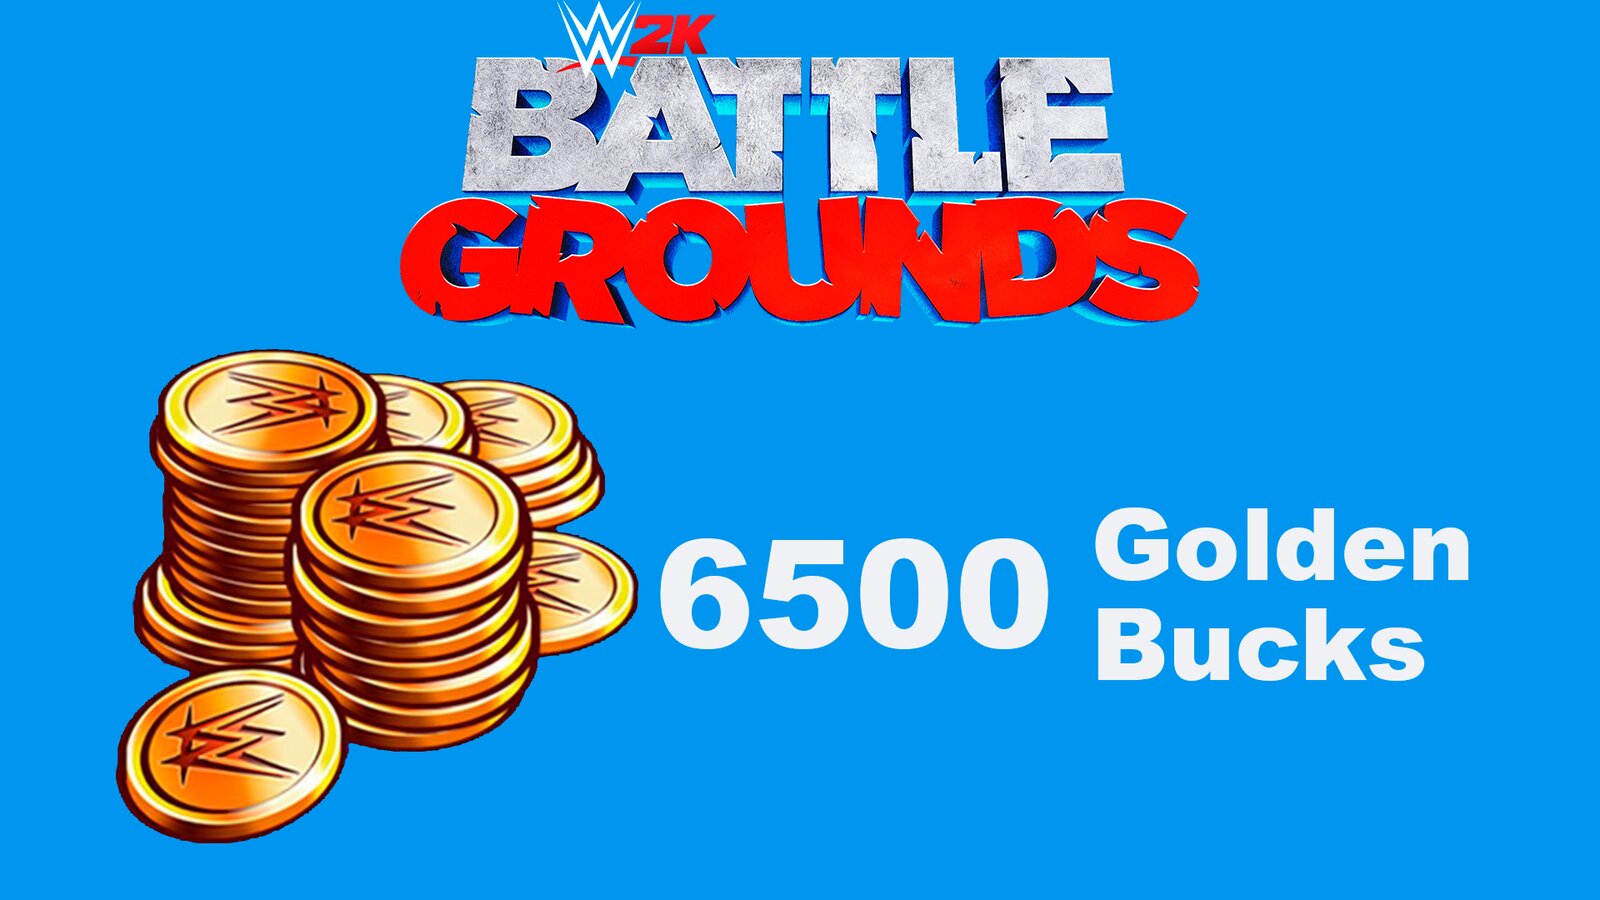 WWE 2K Battlegrounds: 6500 Golden Bucks